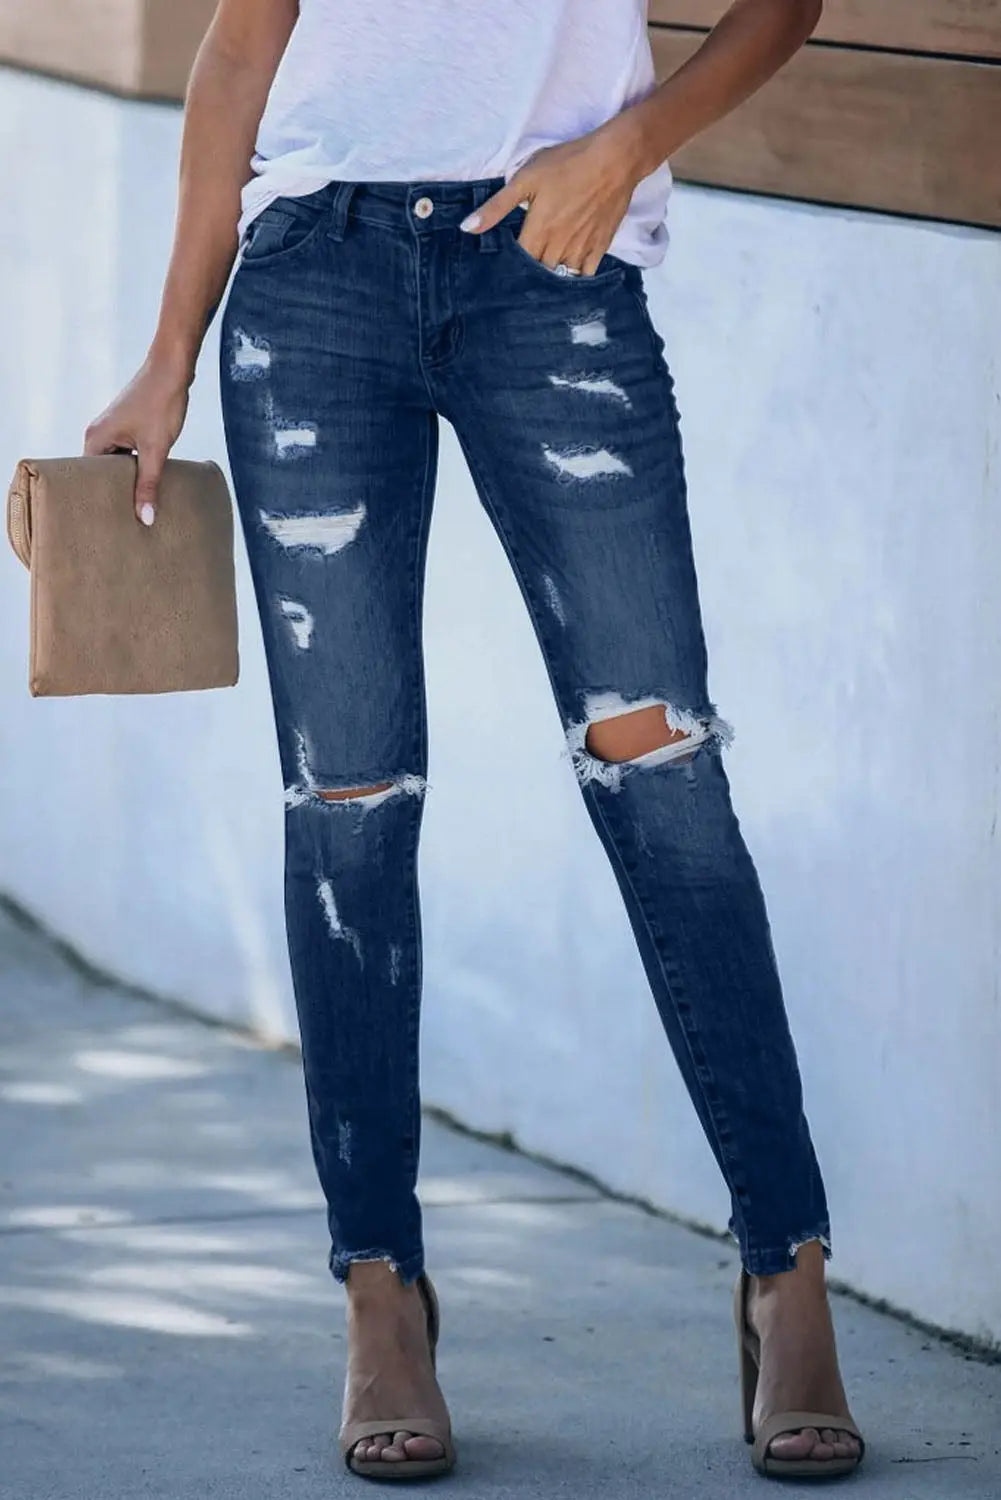 Women's Jeans & Denim Clothing: Shop Online